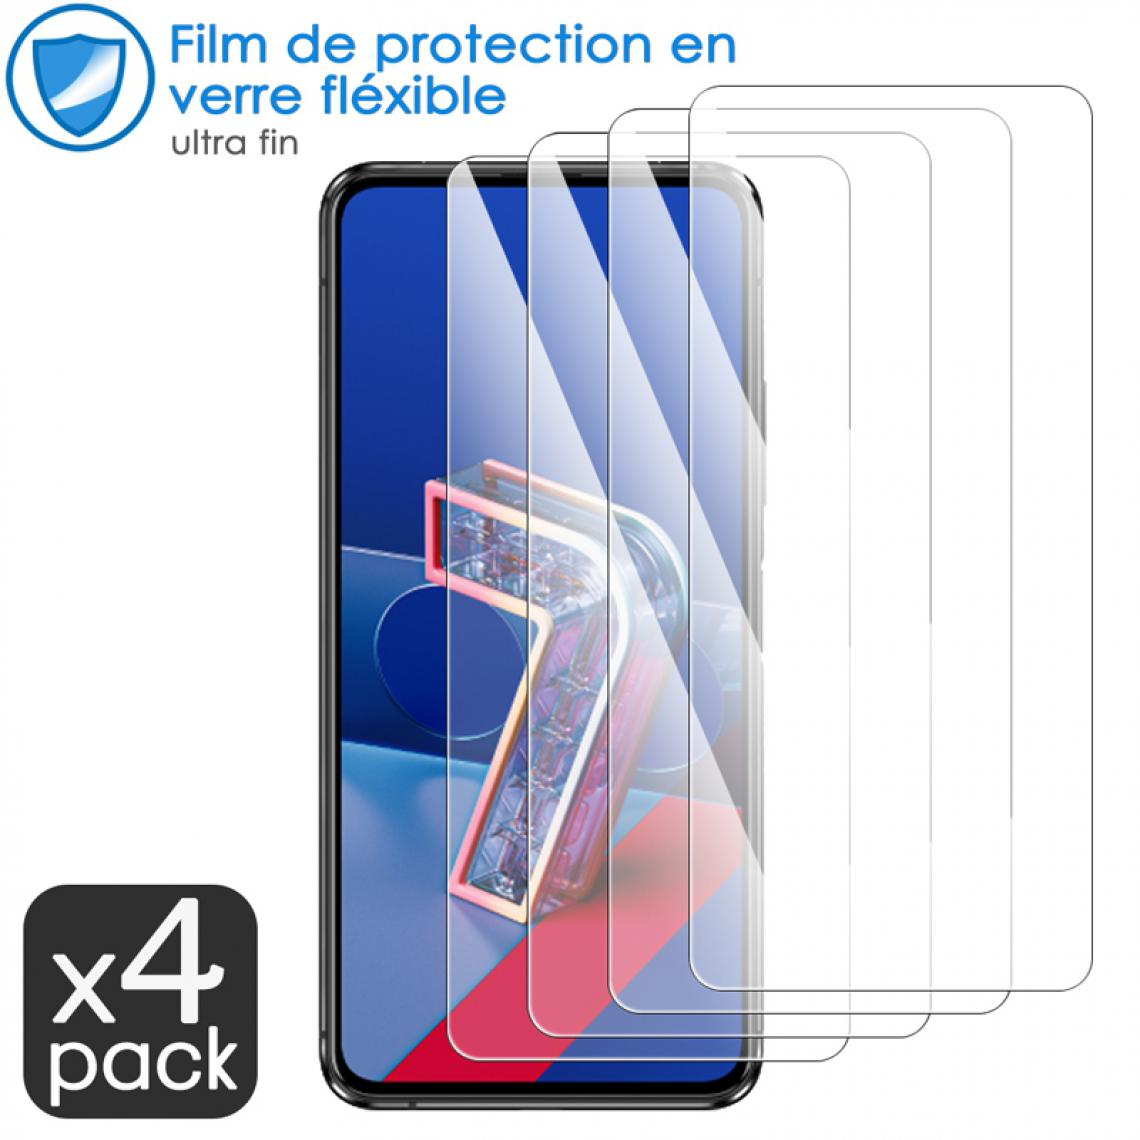 Karylax - Film de Protection d'écran en Verre Fléxible Dureté 9H pour Elephone PX Pro (Pack x4) - Protection écran smartphone